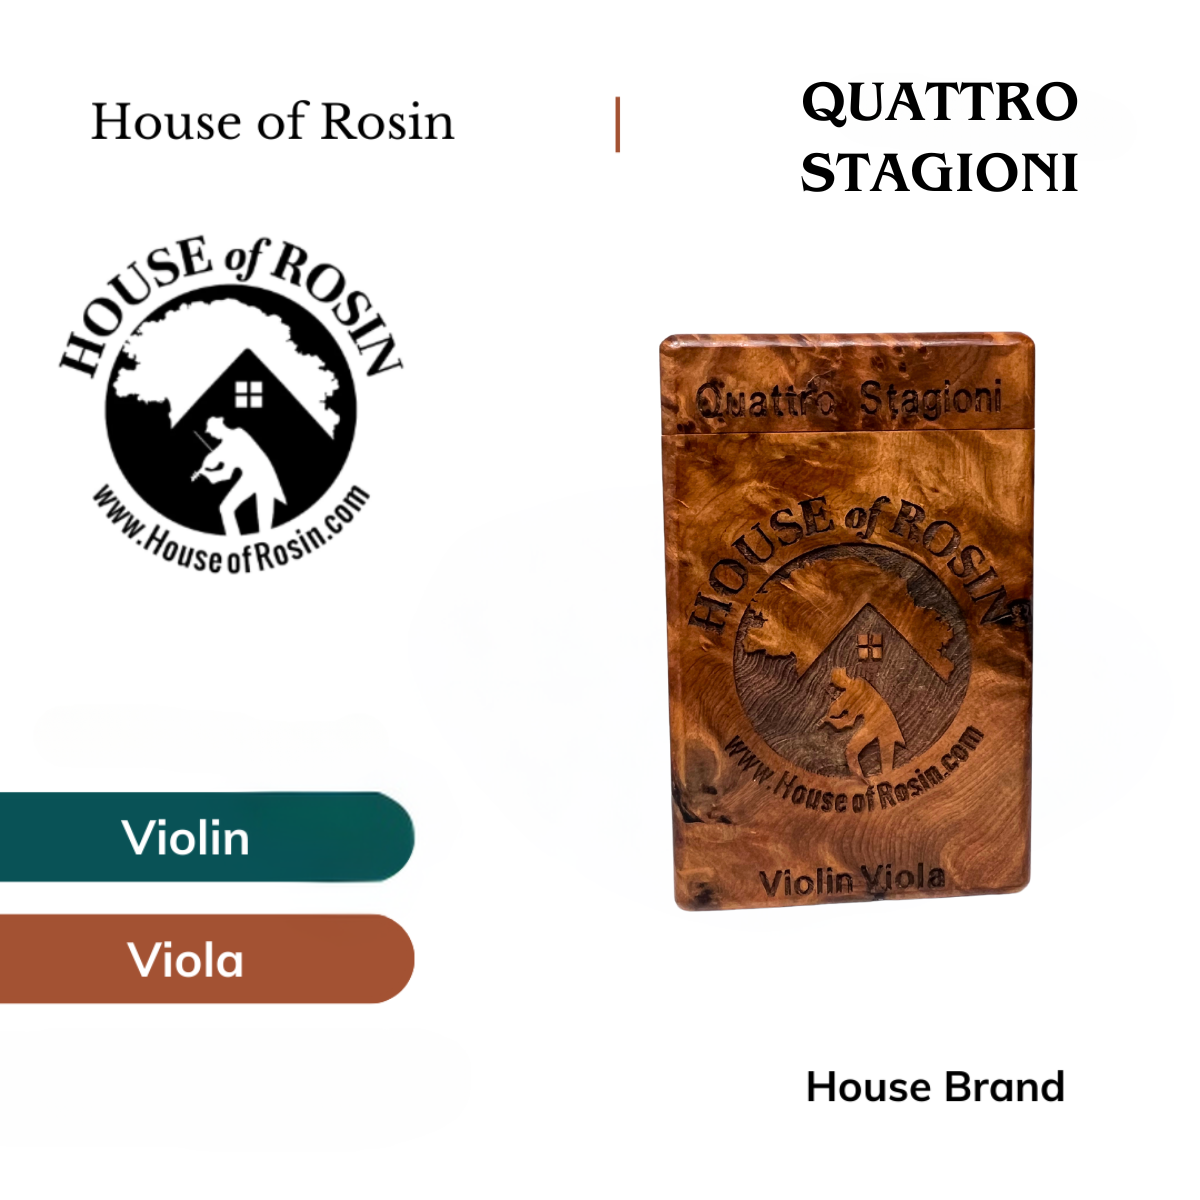 House of Rosin - Quattro Stagioni / Four Season Rosin for Violin & Viola